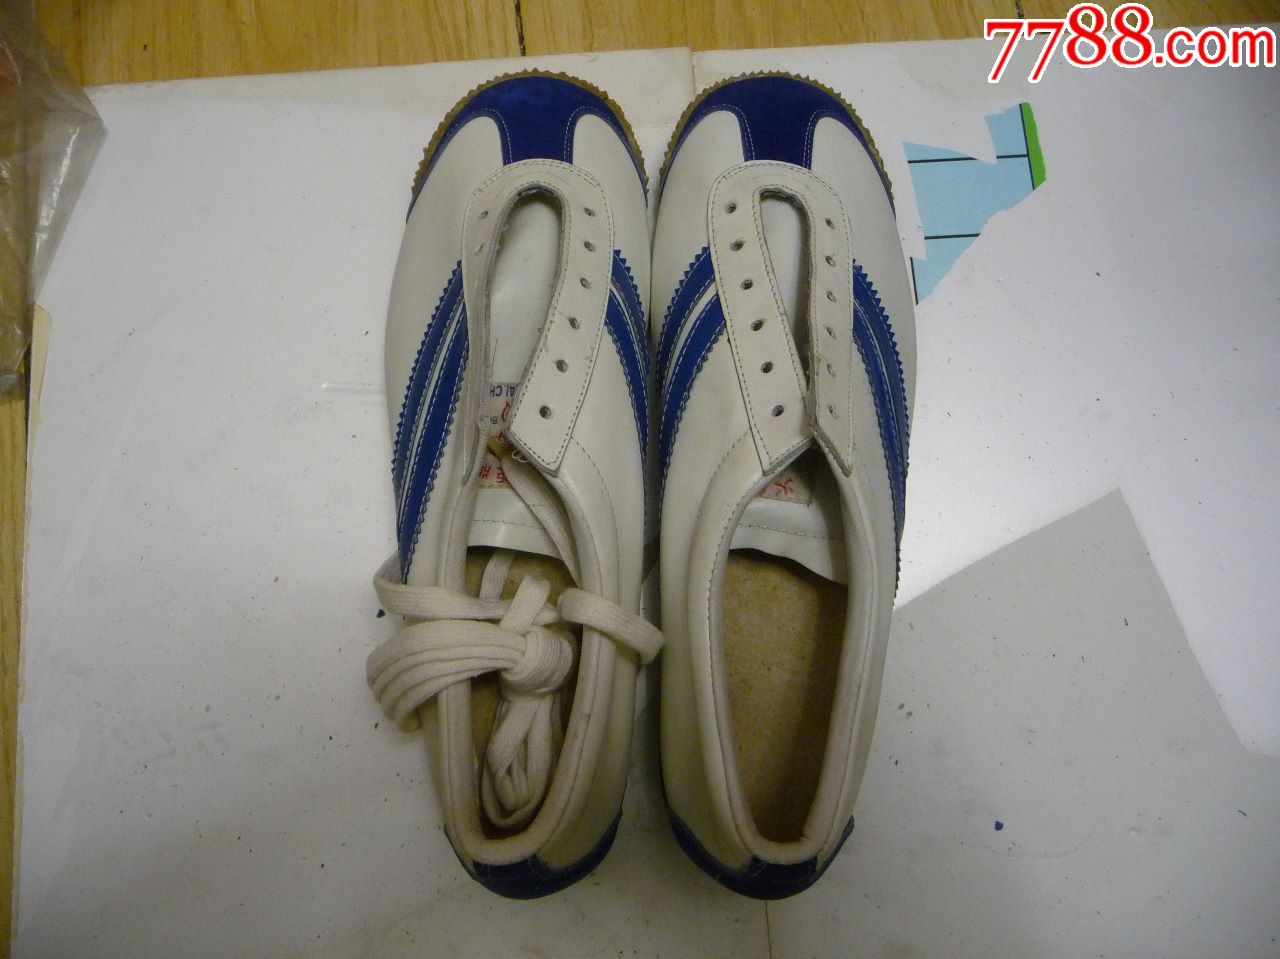 古董运动鞋收藏上世纪八十年代的火炬牌皮制运动鞋40码未穿库存货